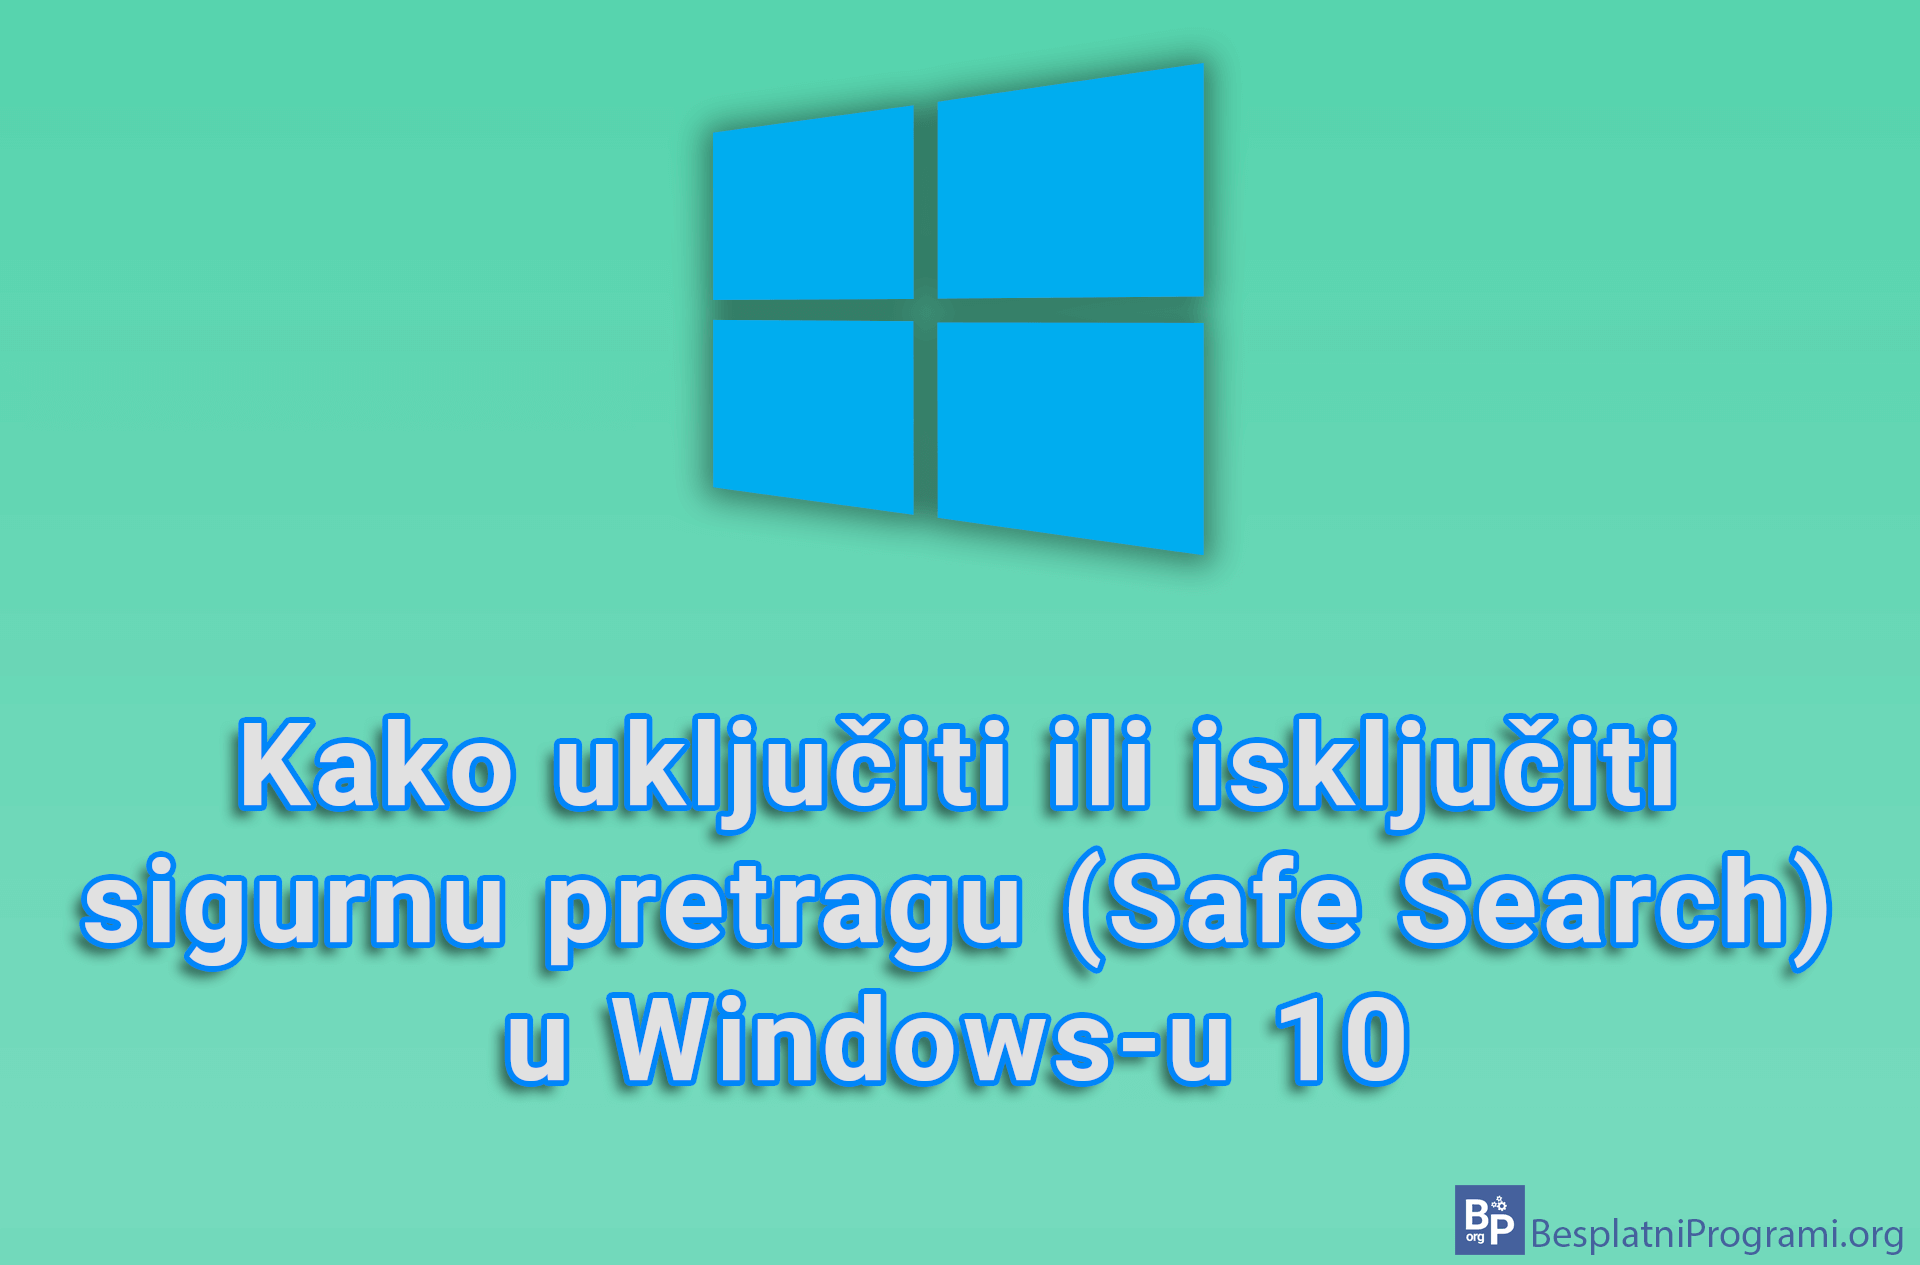 Kako uključiti ili isključiti sigurnu pretragu (Safe Search) u Windows-u 10